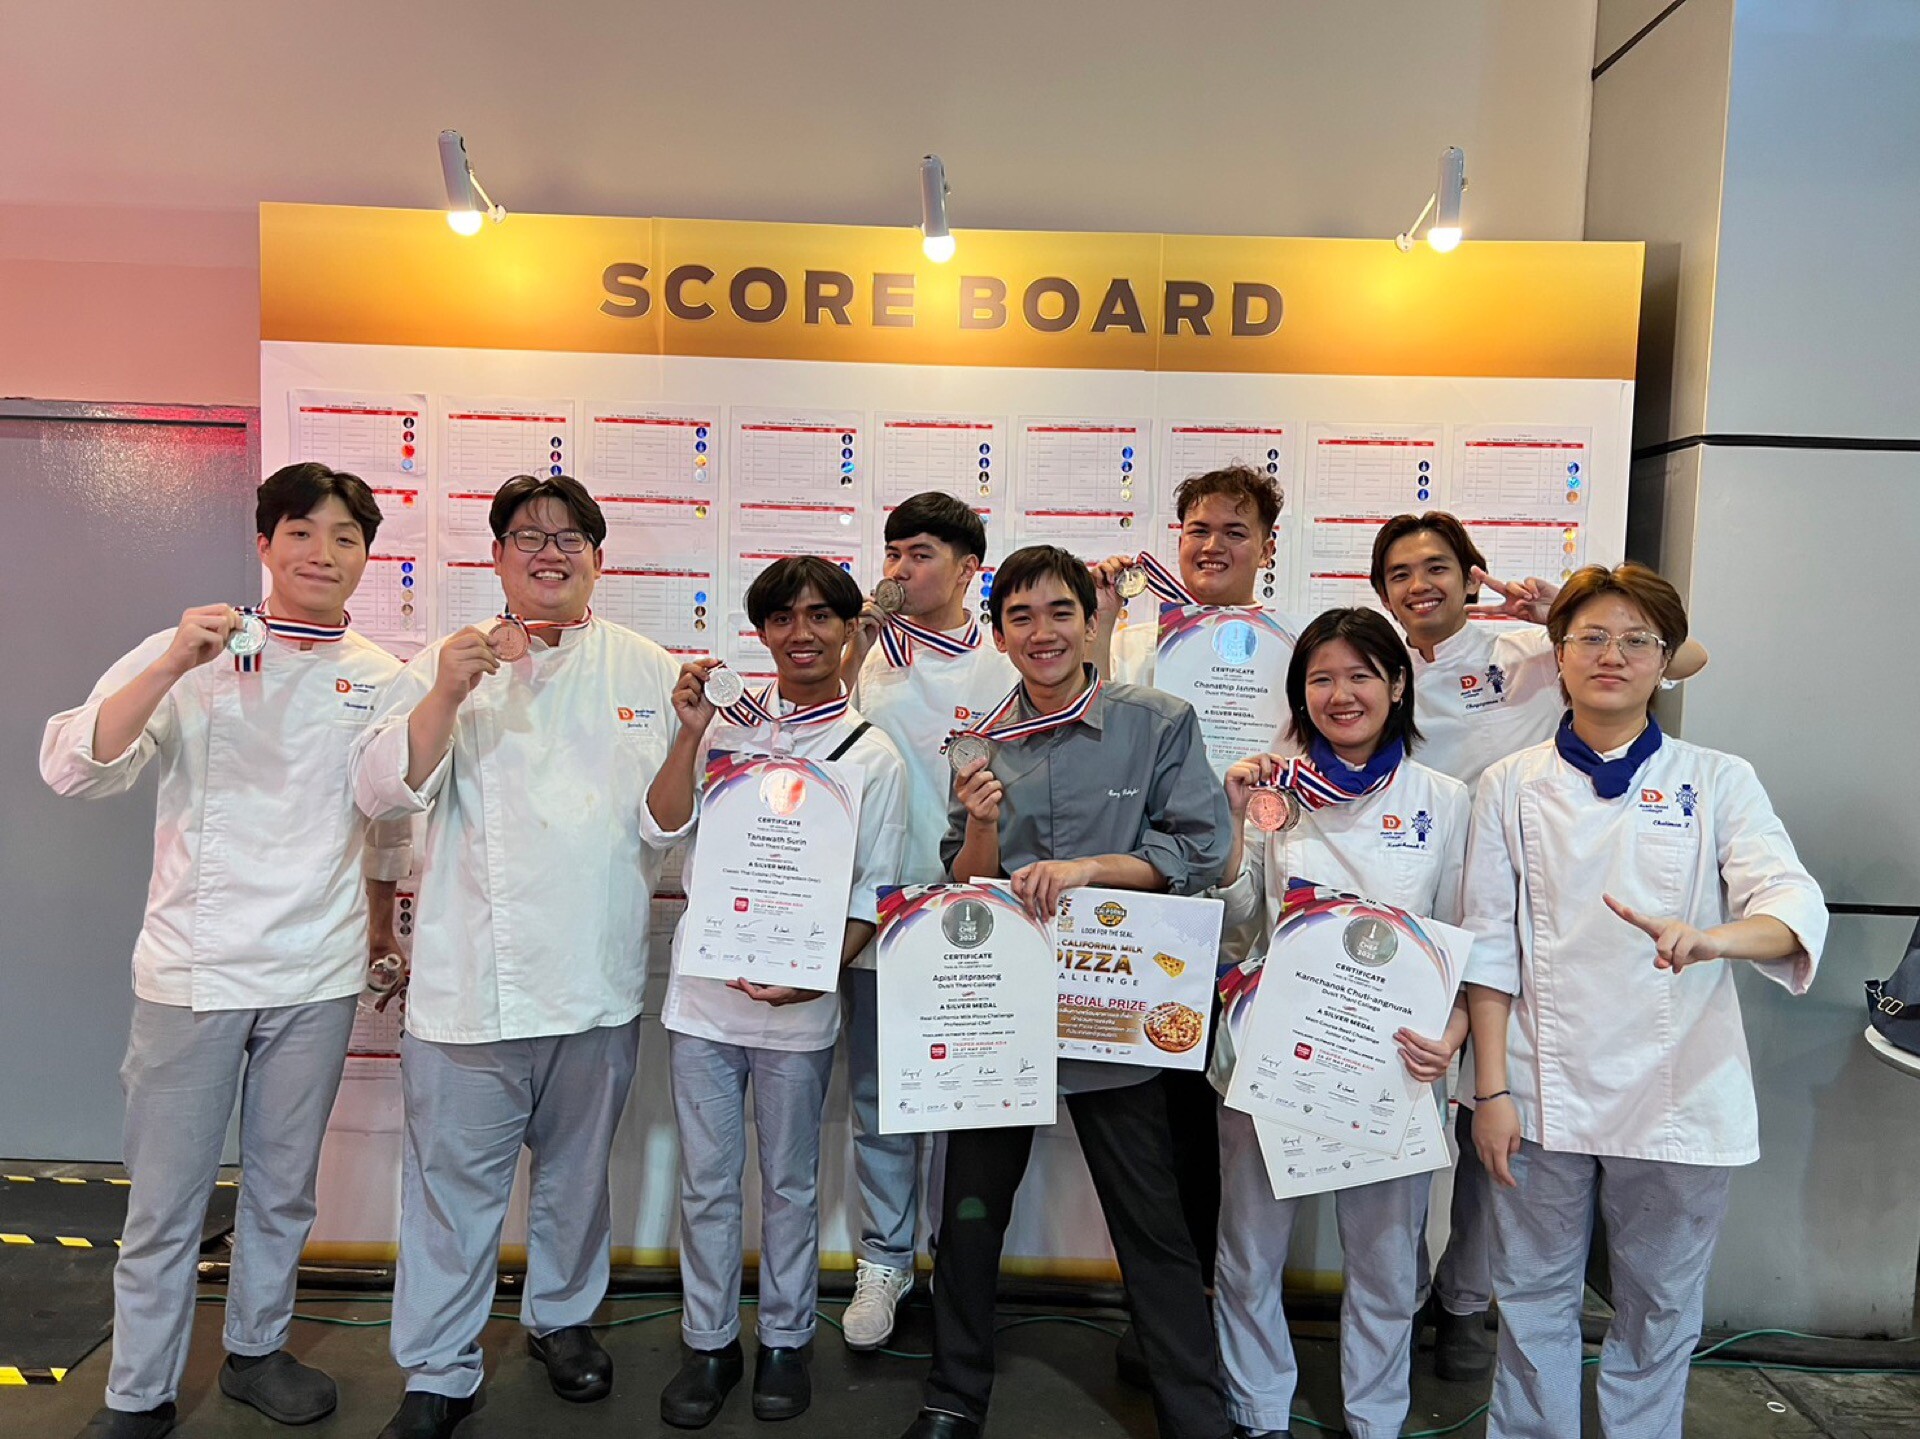 "อาจารย์-นักศึกษาวิทยาลัยดุสิตธานี ยกขบวนกวาดรางวัล" รายการแข่งขันทำอาหารที่ใหญ่ที่สุดของไทย